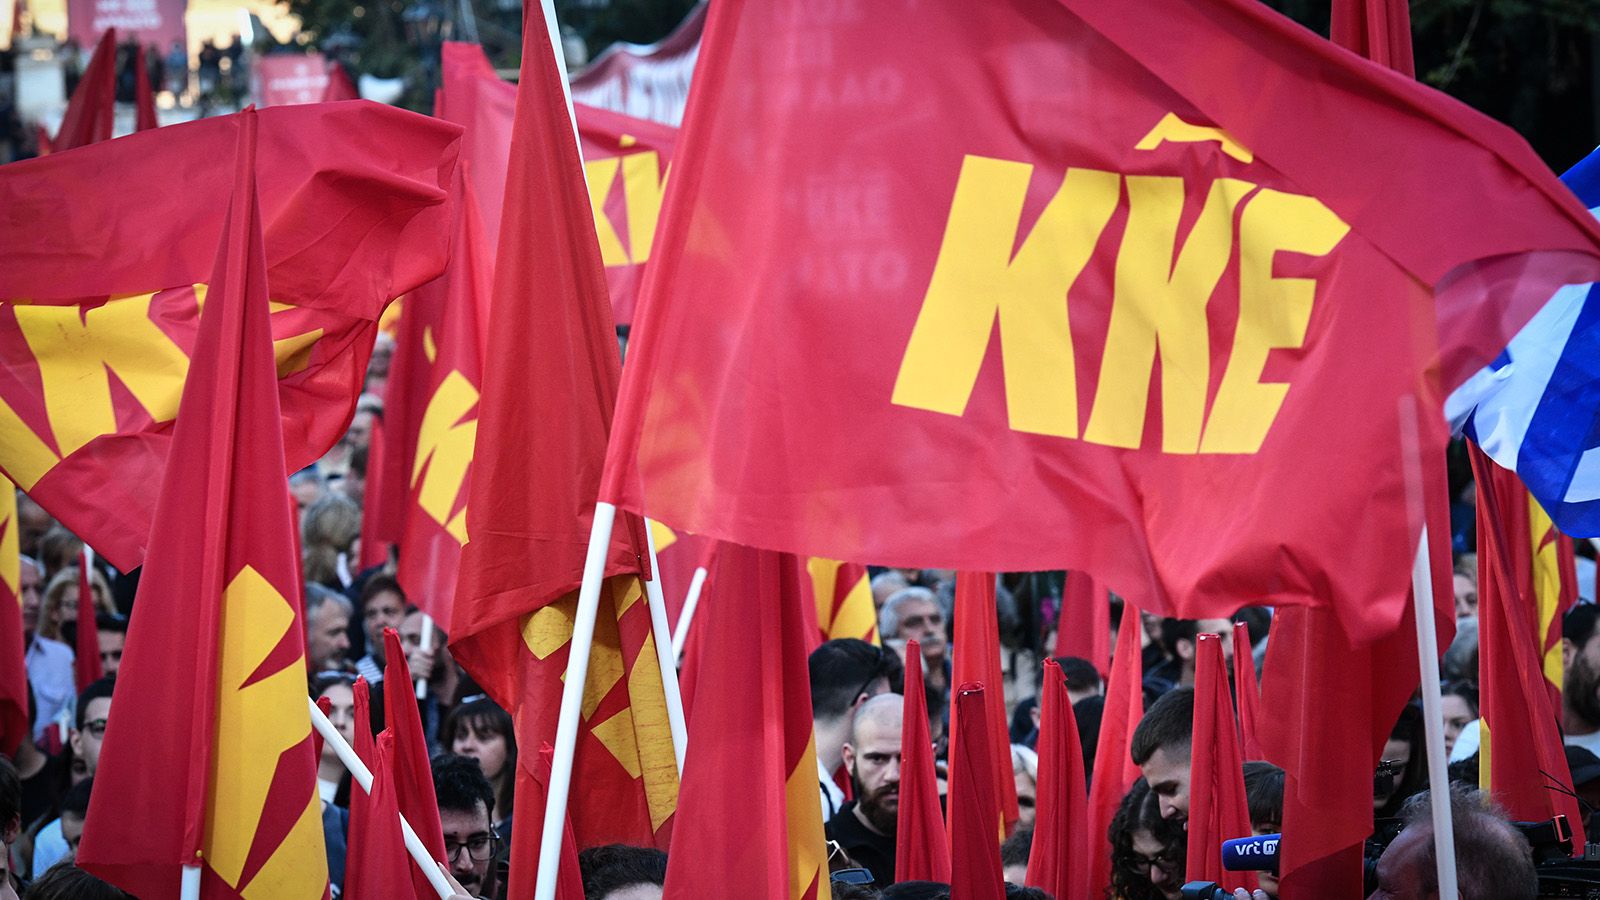 ΚΚΕ, το ισχυρότερο Κομμουνιστικό Κόμμα στην Ευρώπη